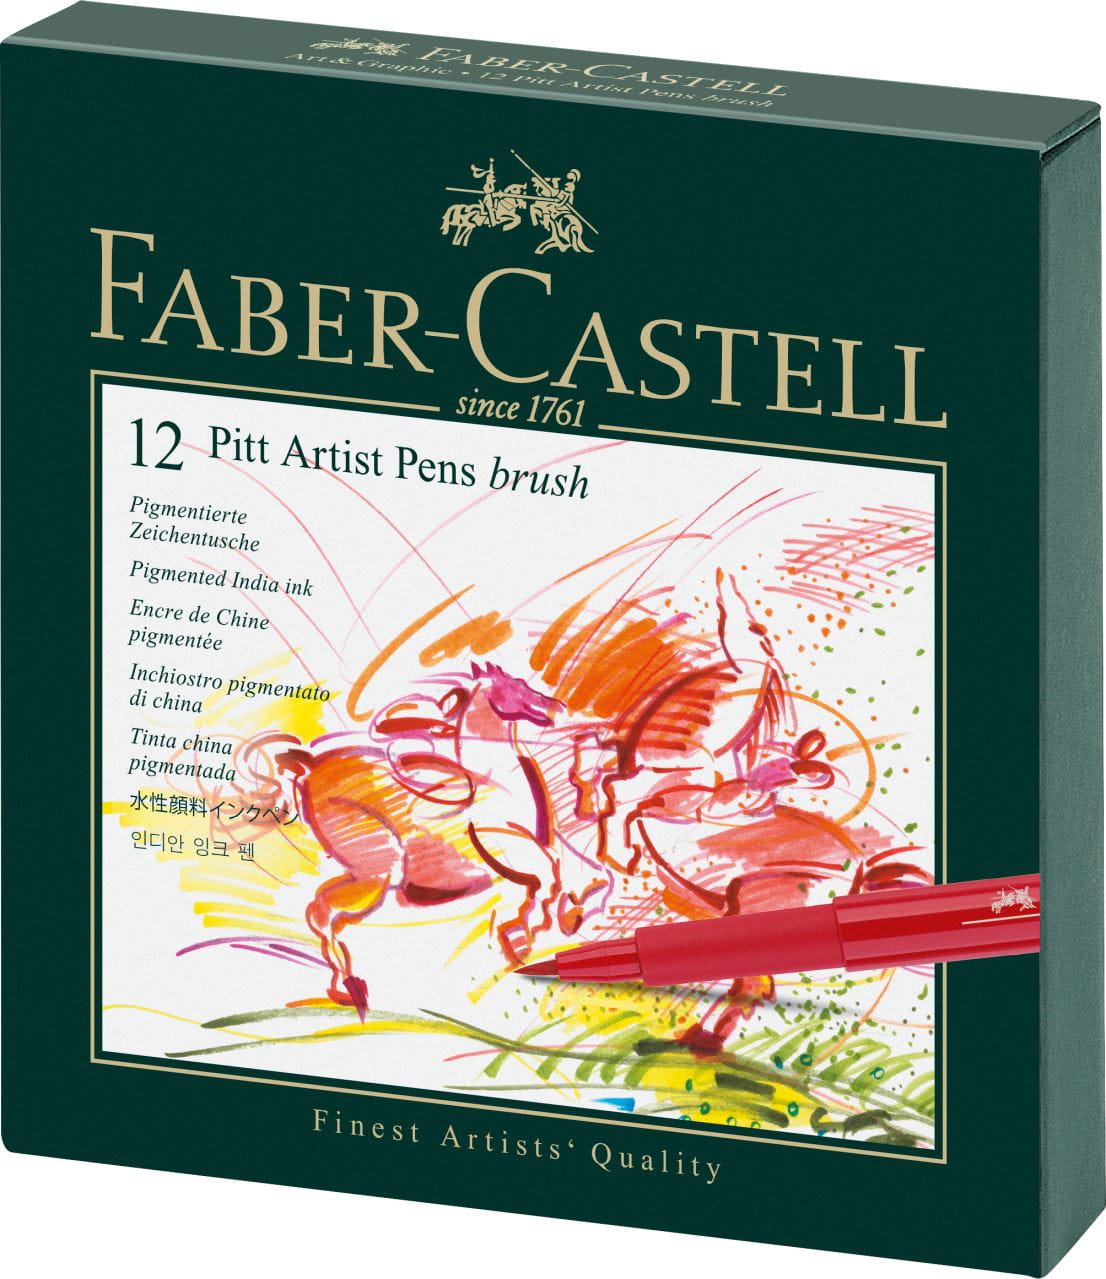 Faber-Castell - Pitt Artist Pen Brush India ink pen, studio box of 12